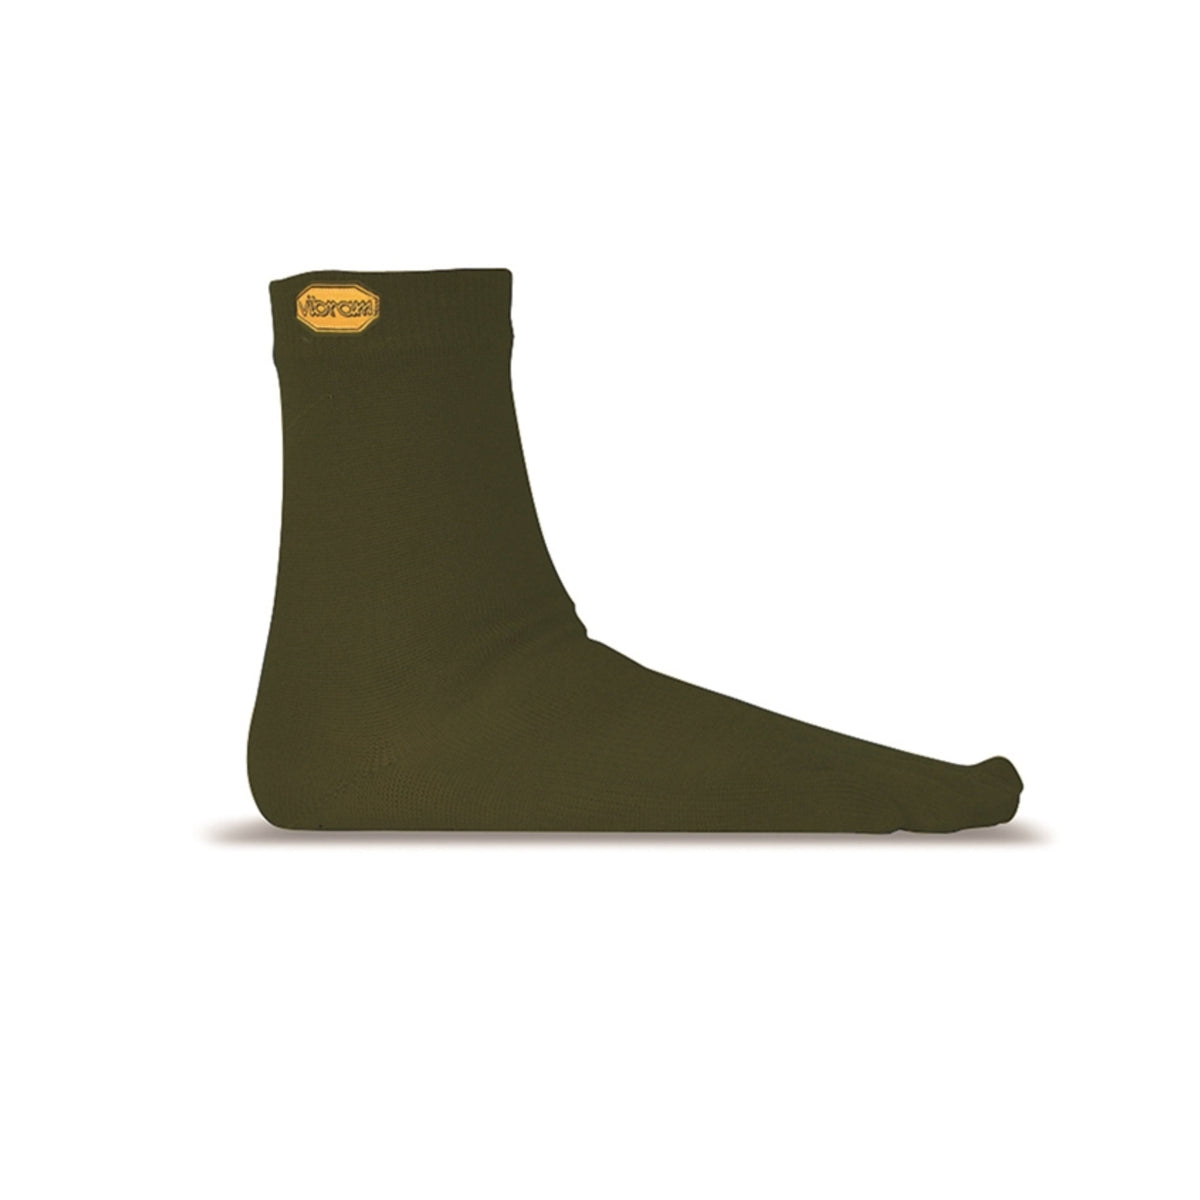 Vibram Toe Socks - Vibram Merino Wool-Blend Crew Toe Socks Military Green - Barefoot Junkie - Socks